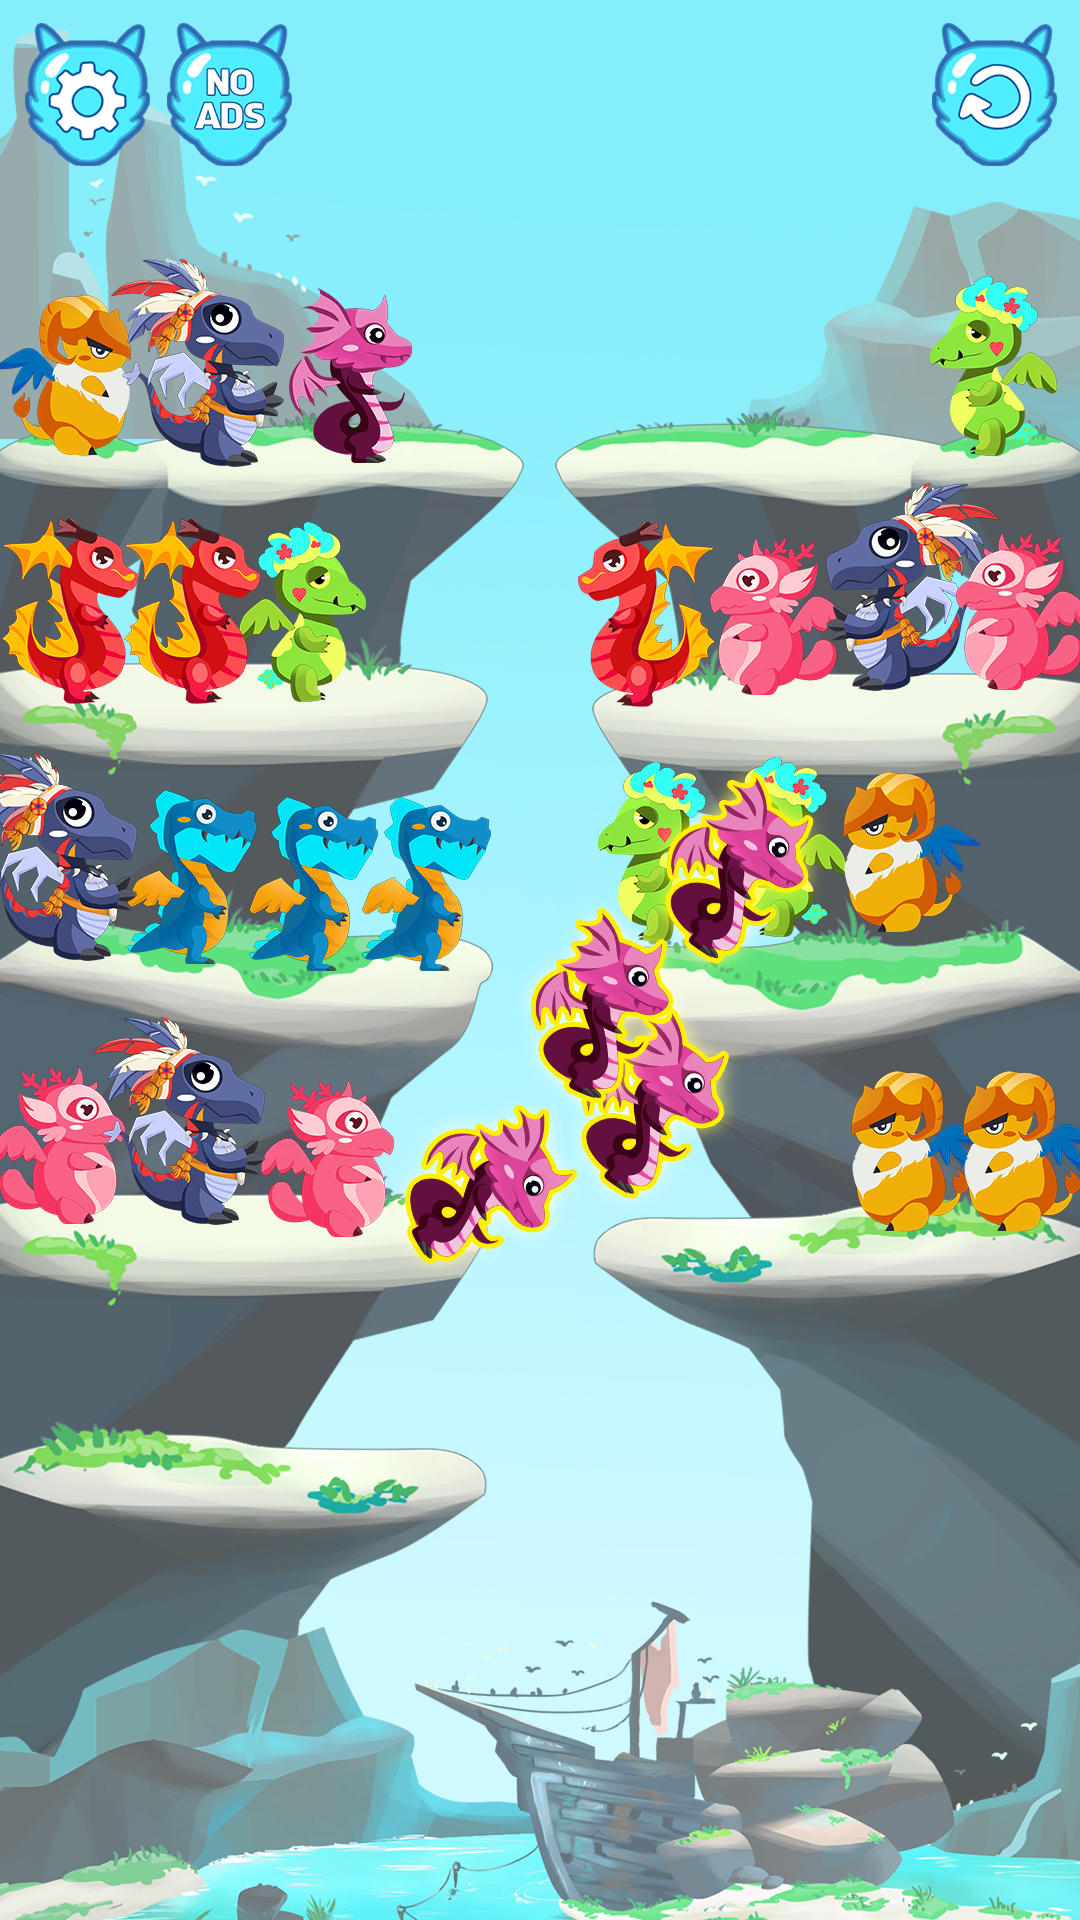 Screenshot 1 of Puzzle couleurs du dragon 1.0.6